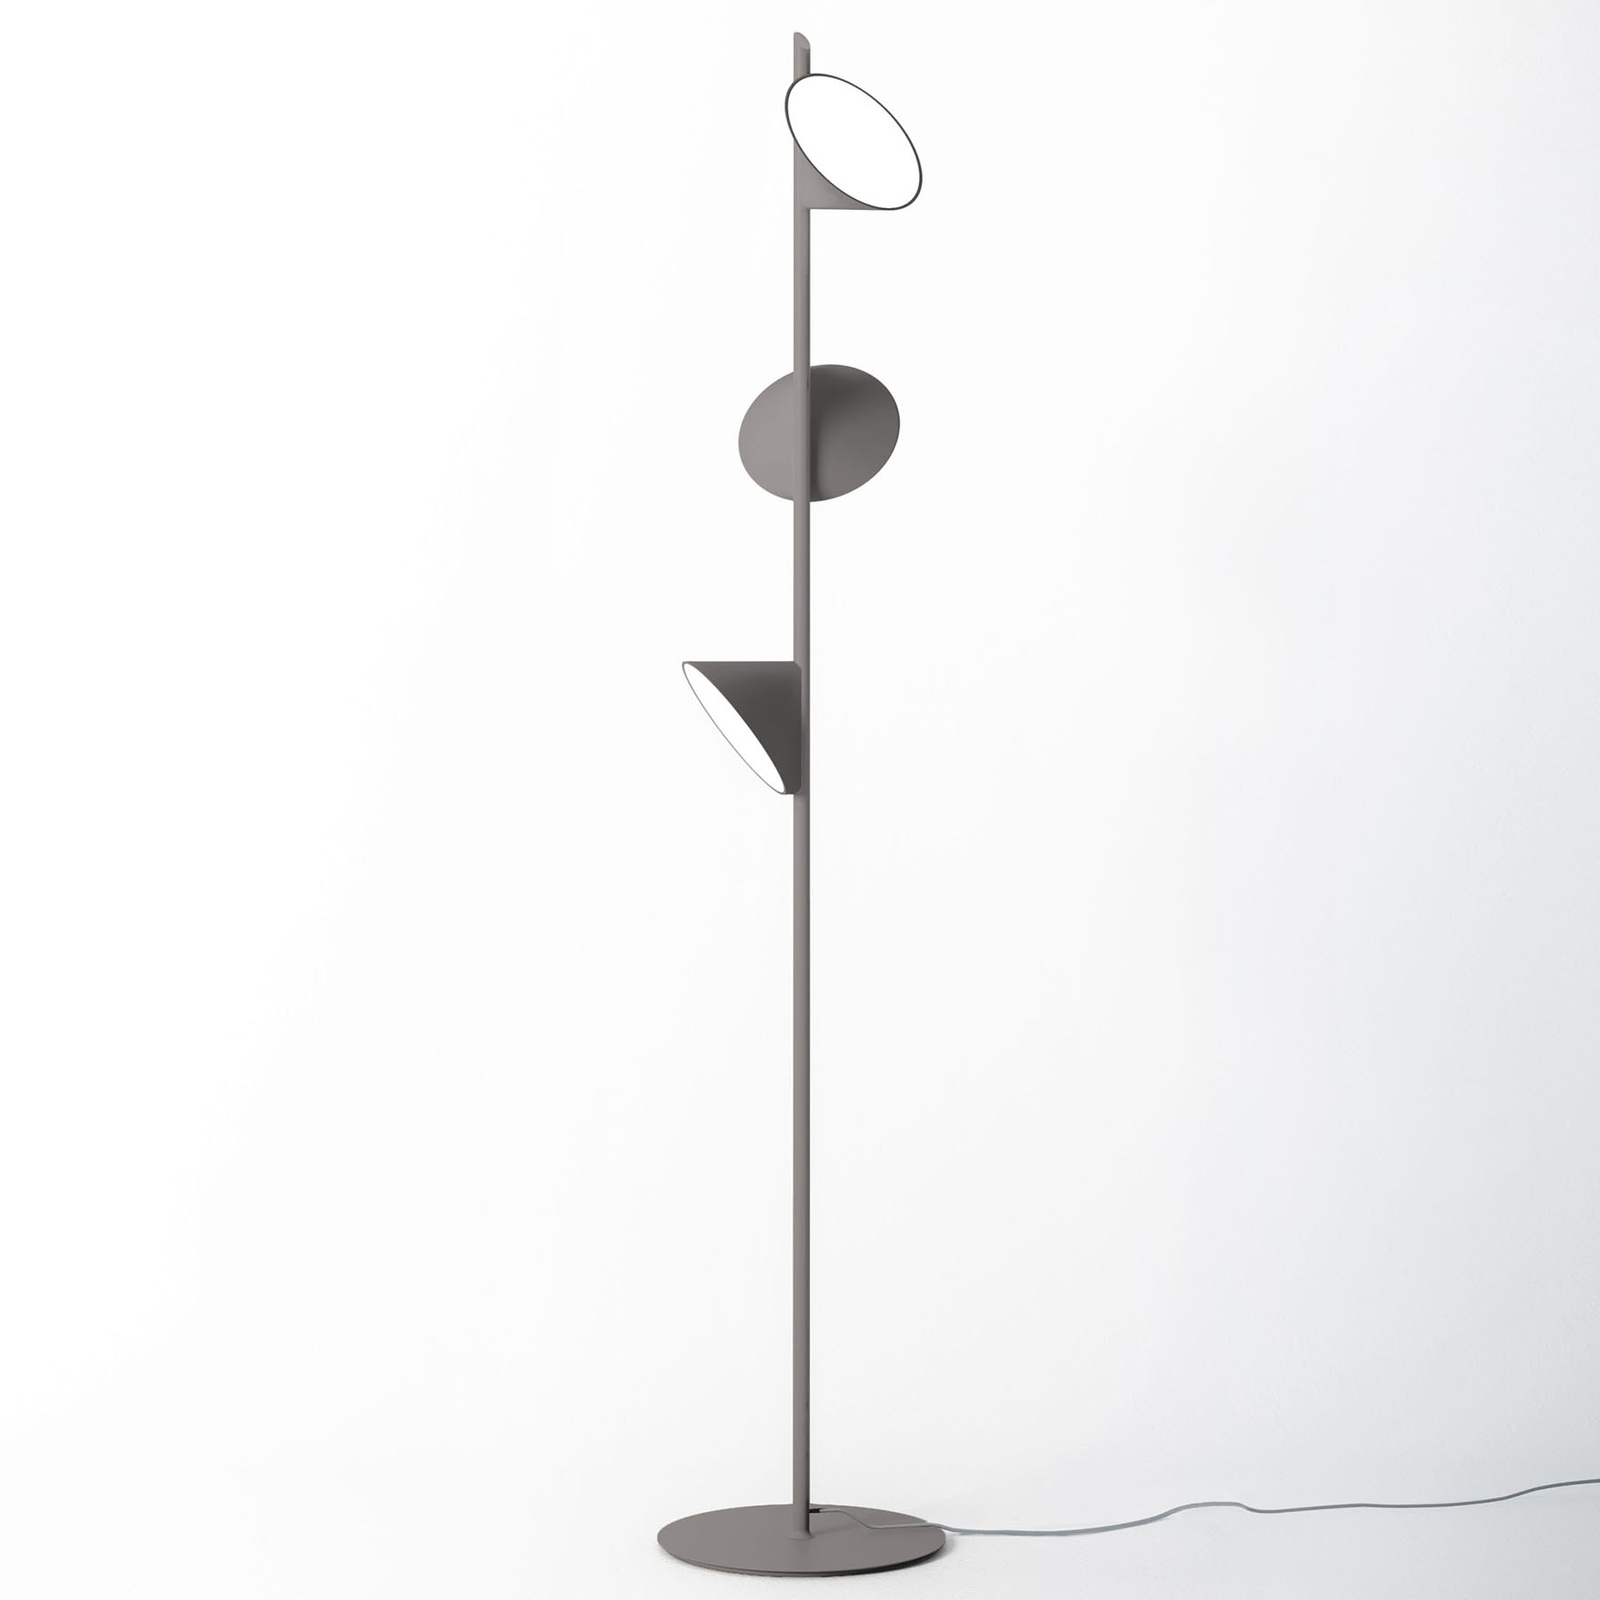 Axolight Orchid LED floor lamp, dark grey